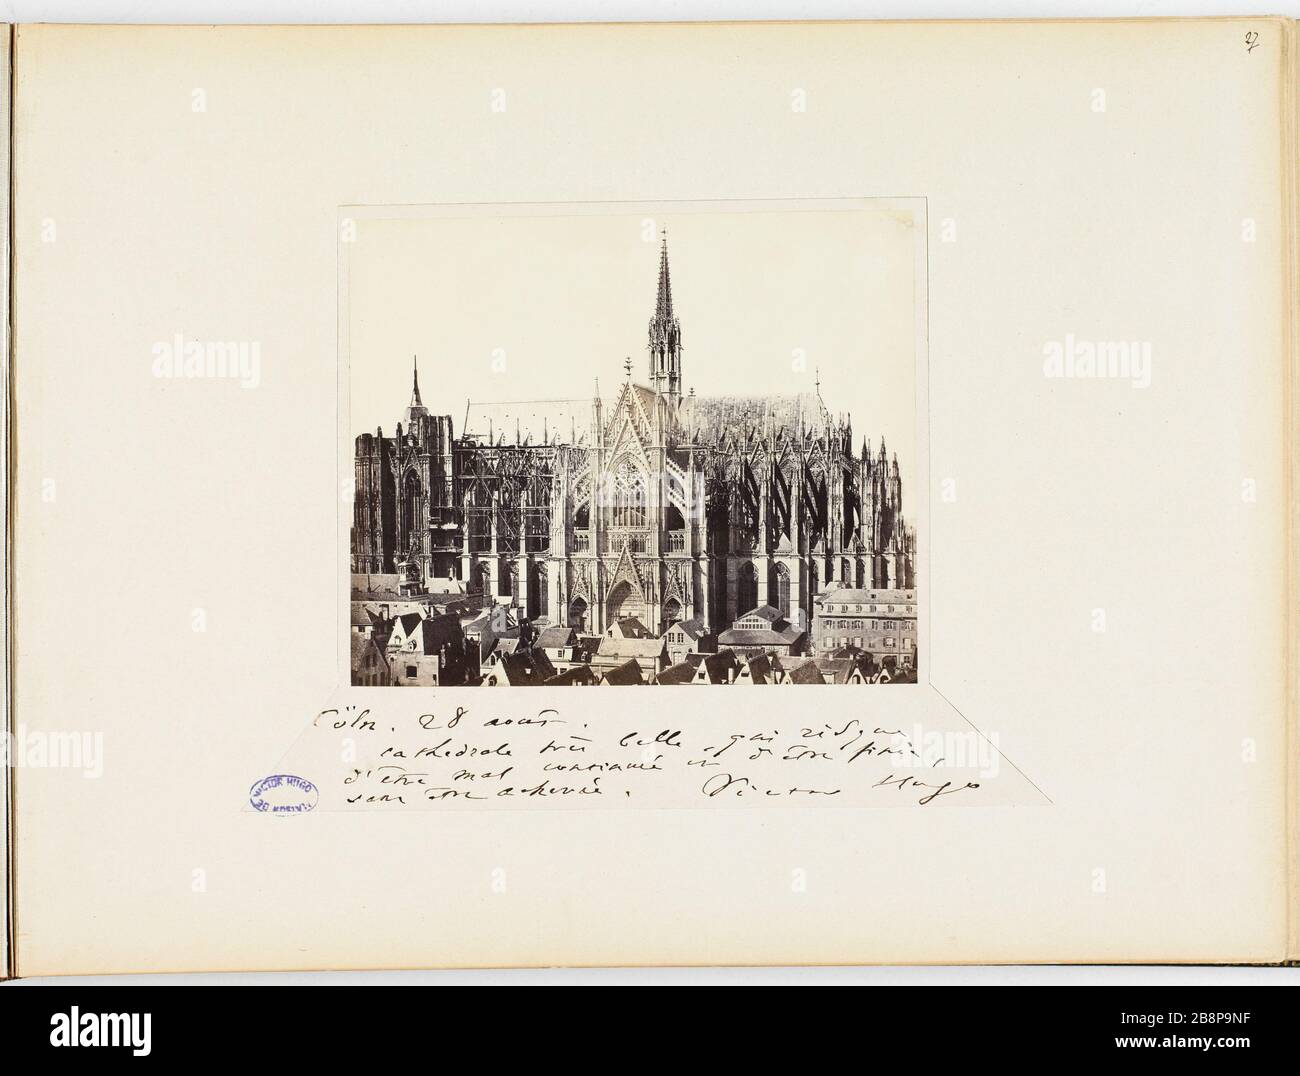 Cologne Cathedral 'Cologne : la cathédrale'. Photographie anonyme. Tirage sur papier albuminé. 1865-1871. Paris, Maison de Victor Hugo. Stock Photo